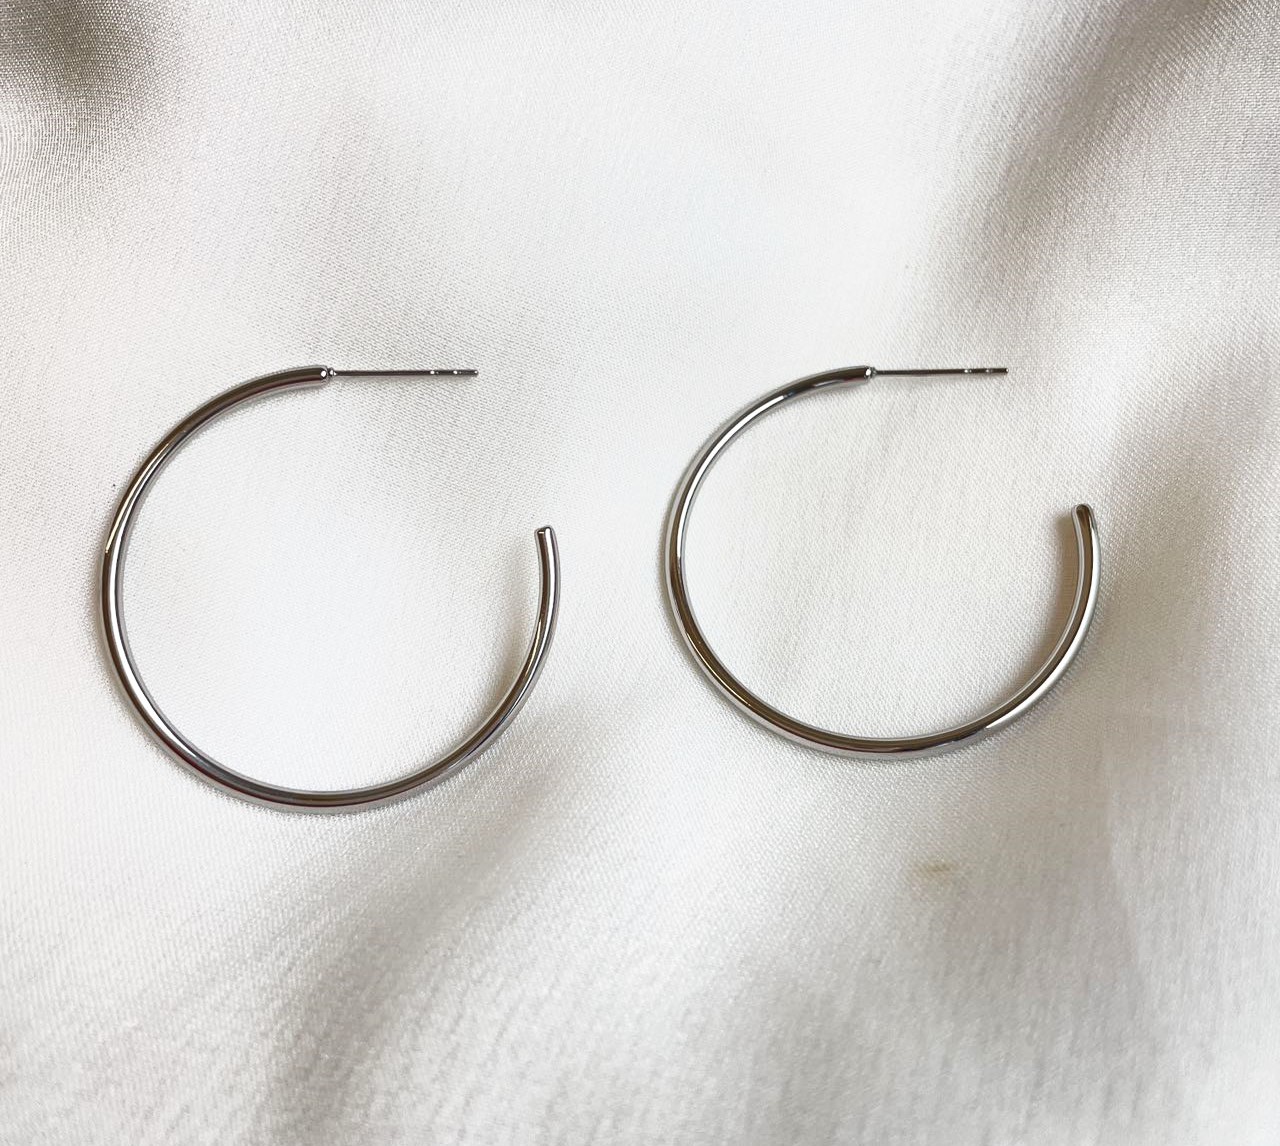 Simple Circle Stainless Steel Earrings